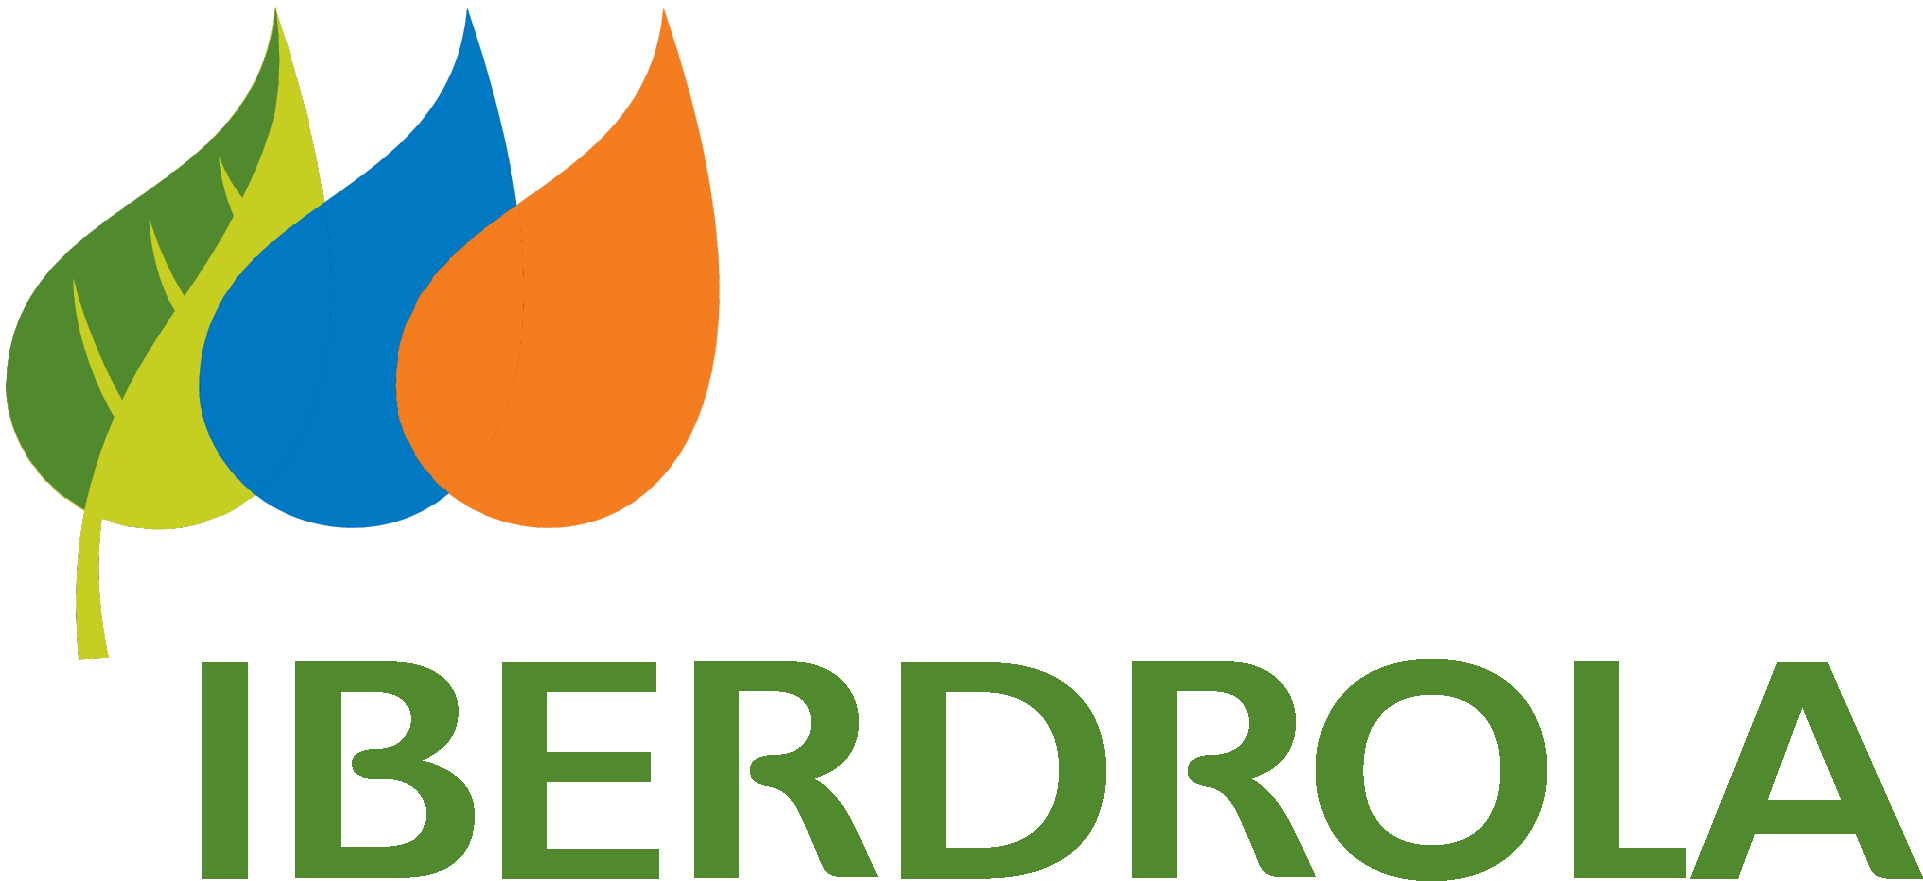 Iberdrola Logo - Iberdrola Clipart (1923x881), Png Download